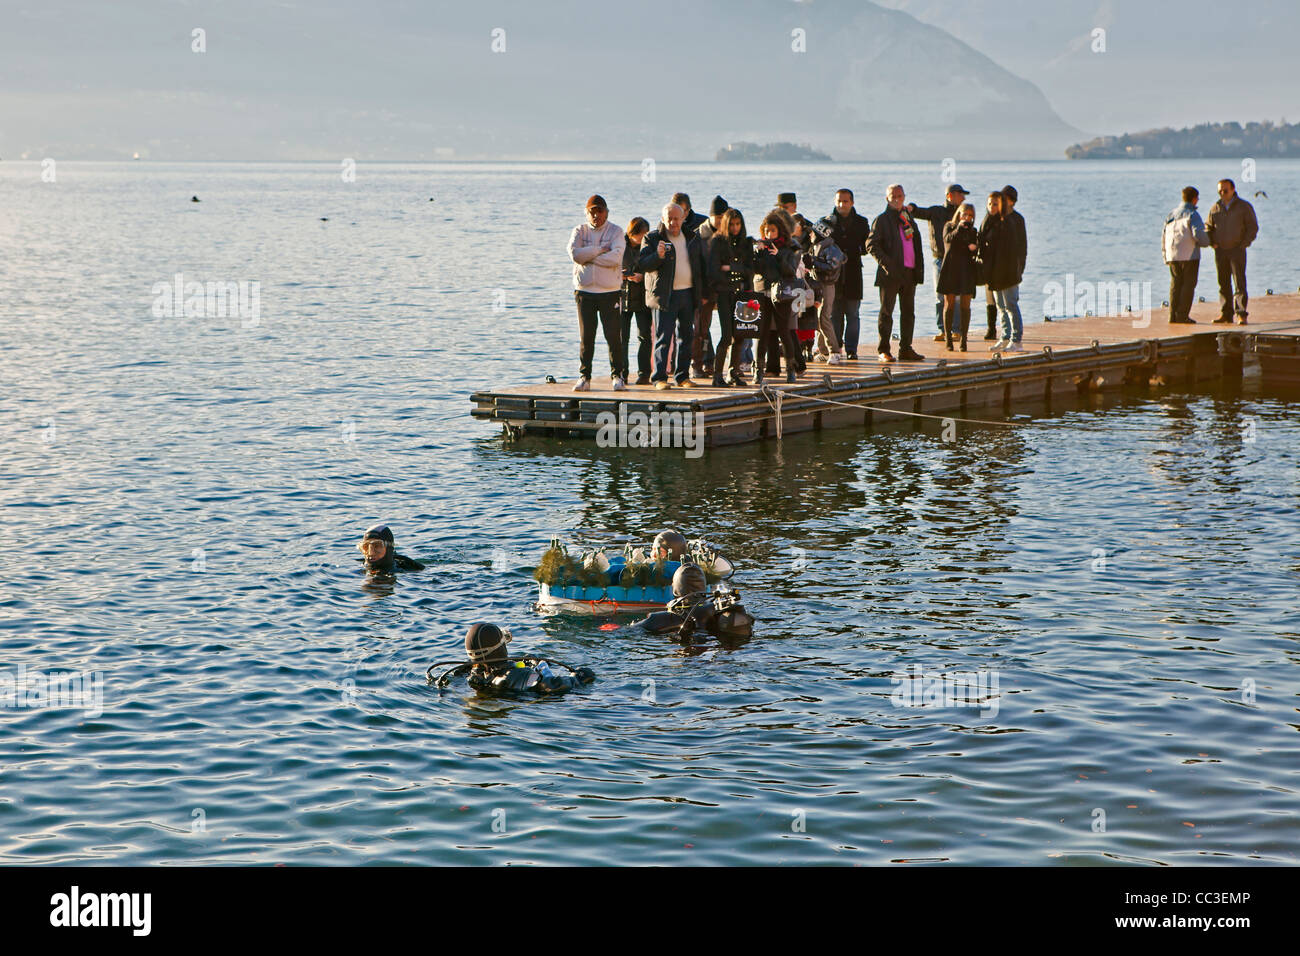 Laveno-Mombello it is a tradition, an underwater nativity scene in the Lago Maggiore build. Stock Photo